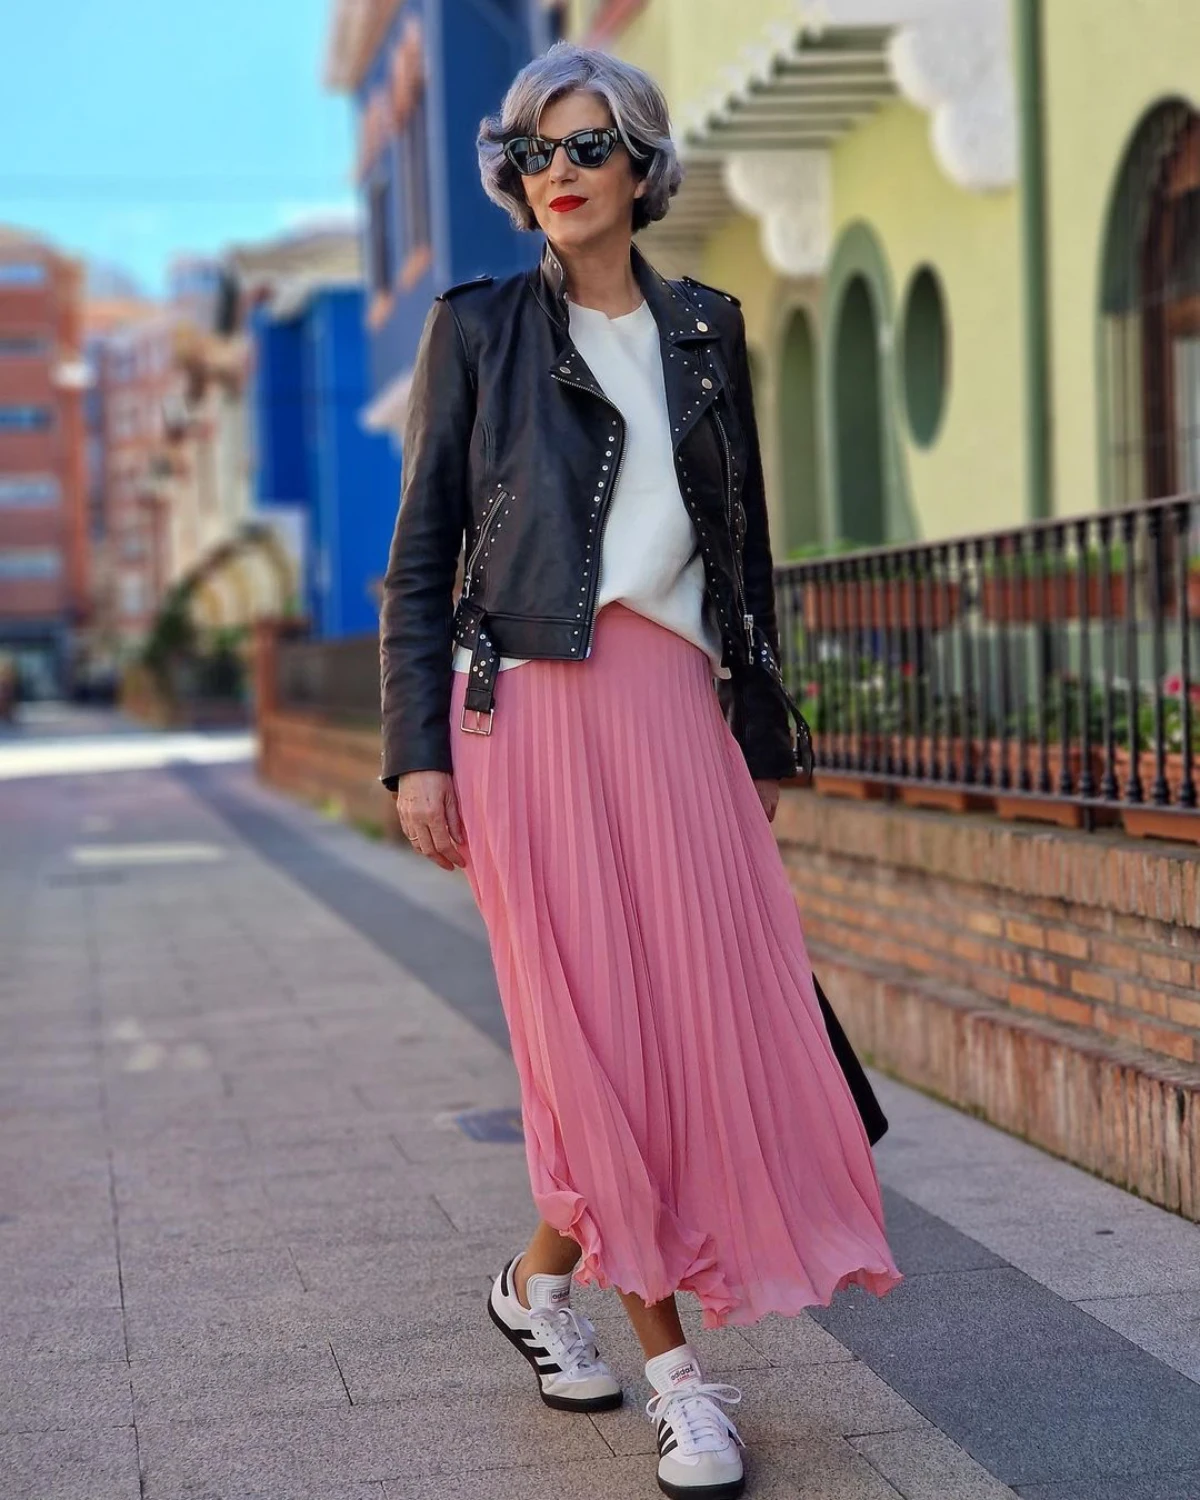 jupe rose baskets addidas top blanc veste en cuir femme rue